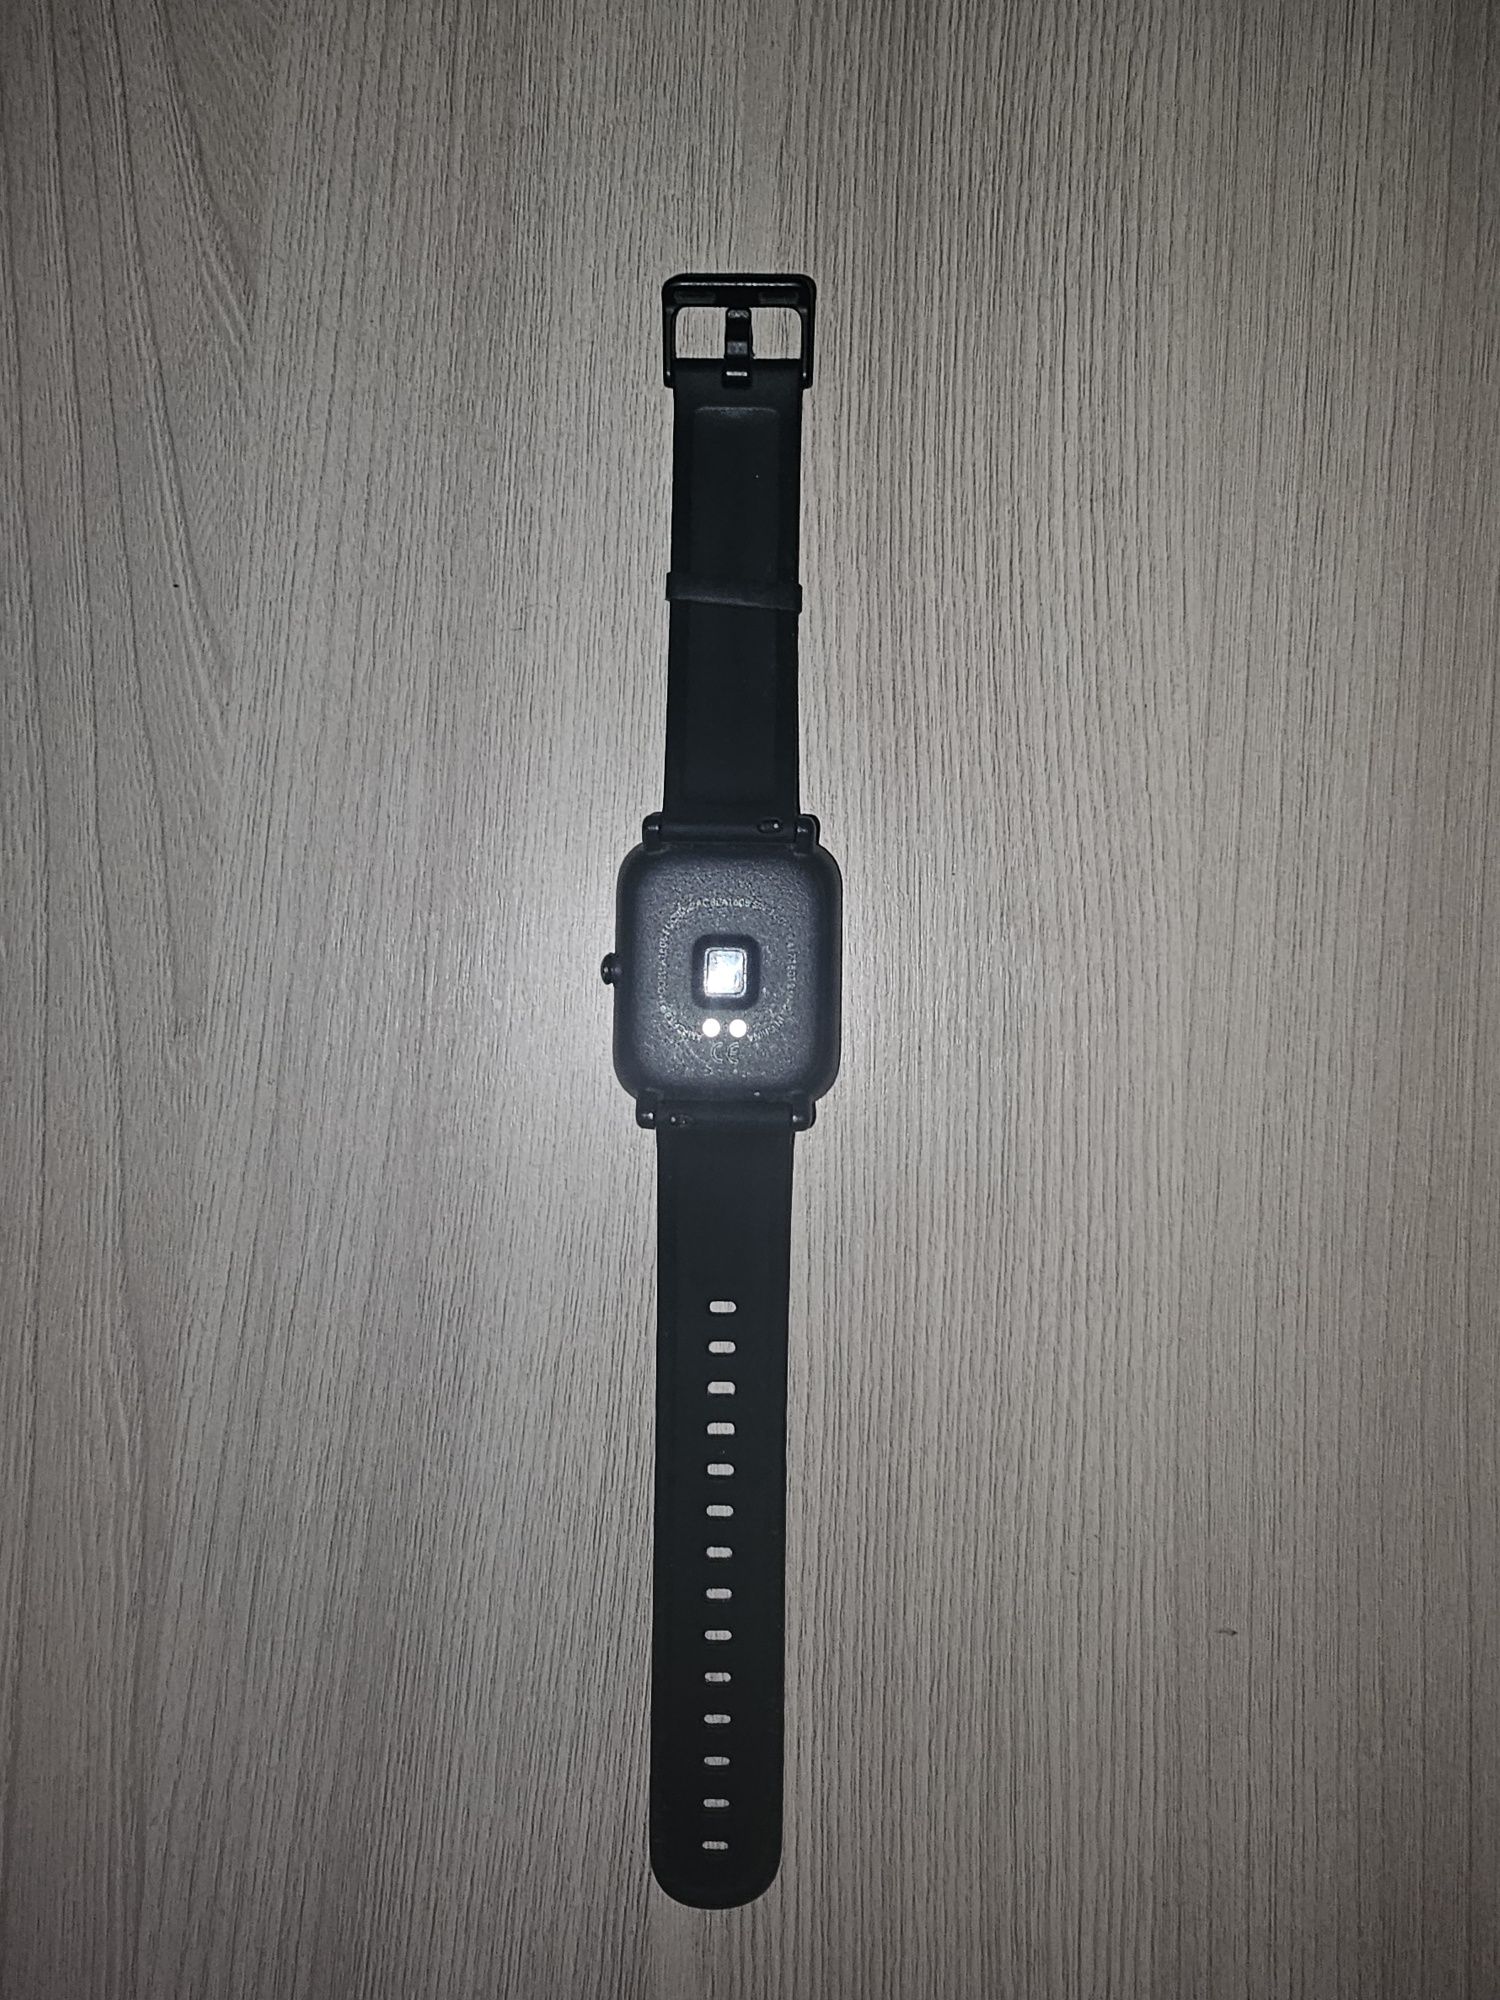 ШОК ЦЕНА!!! Продаётся часы Xiaomi Amazfit Bip